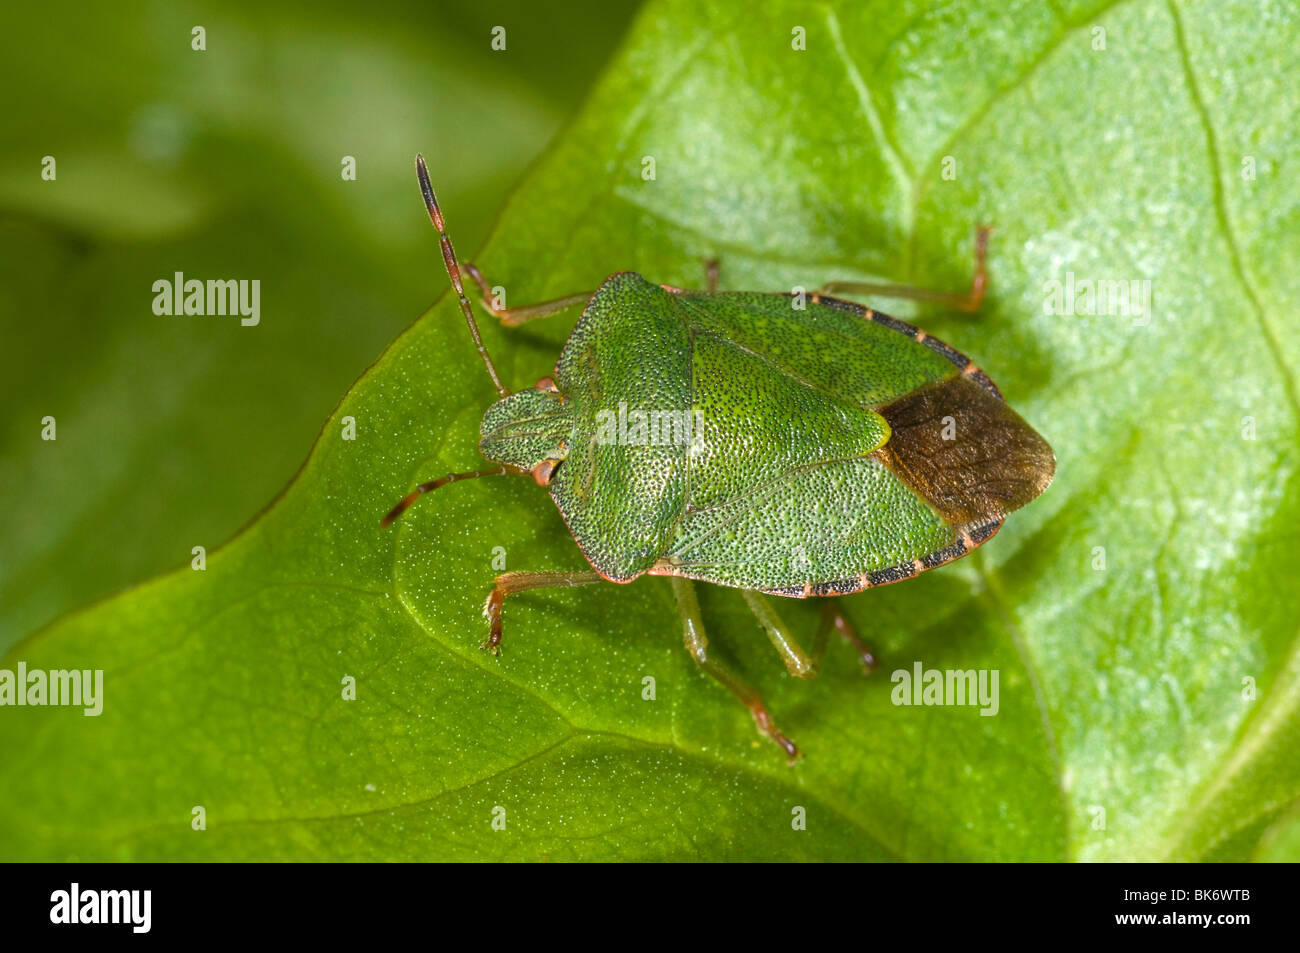 Green shieldbug on leaf. Palomina Prasina, Order Hemiptera sub order Heteroptera Family Acanthosomidae Stock Photo